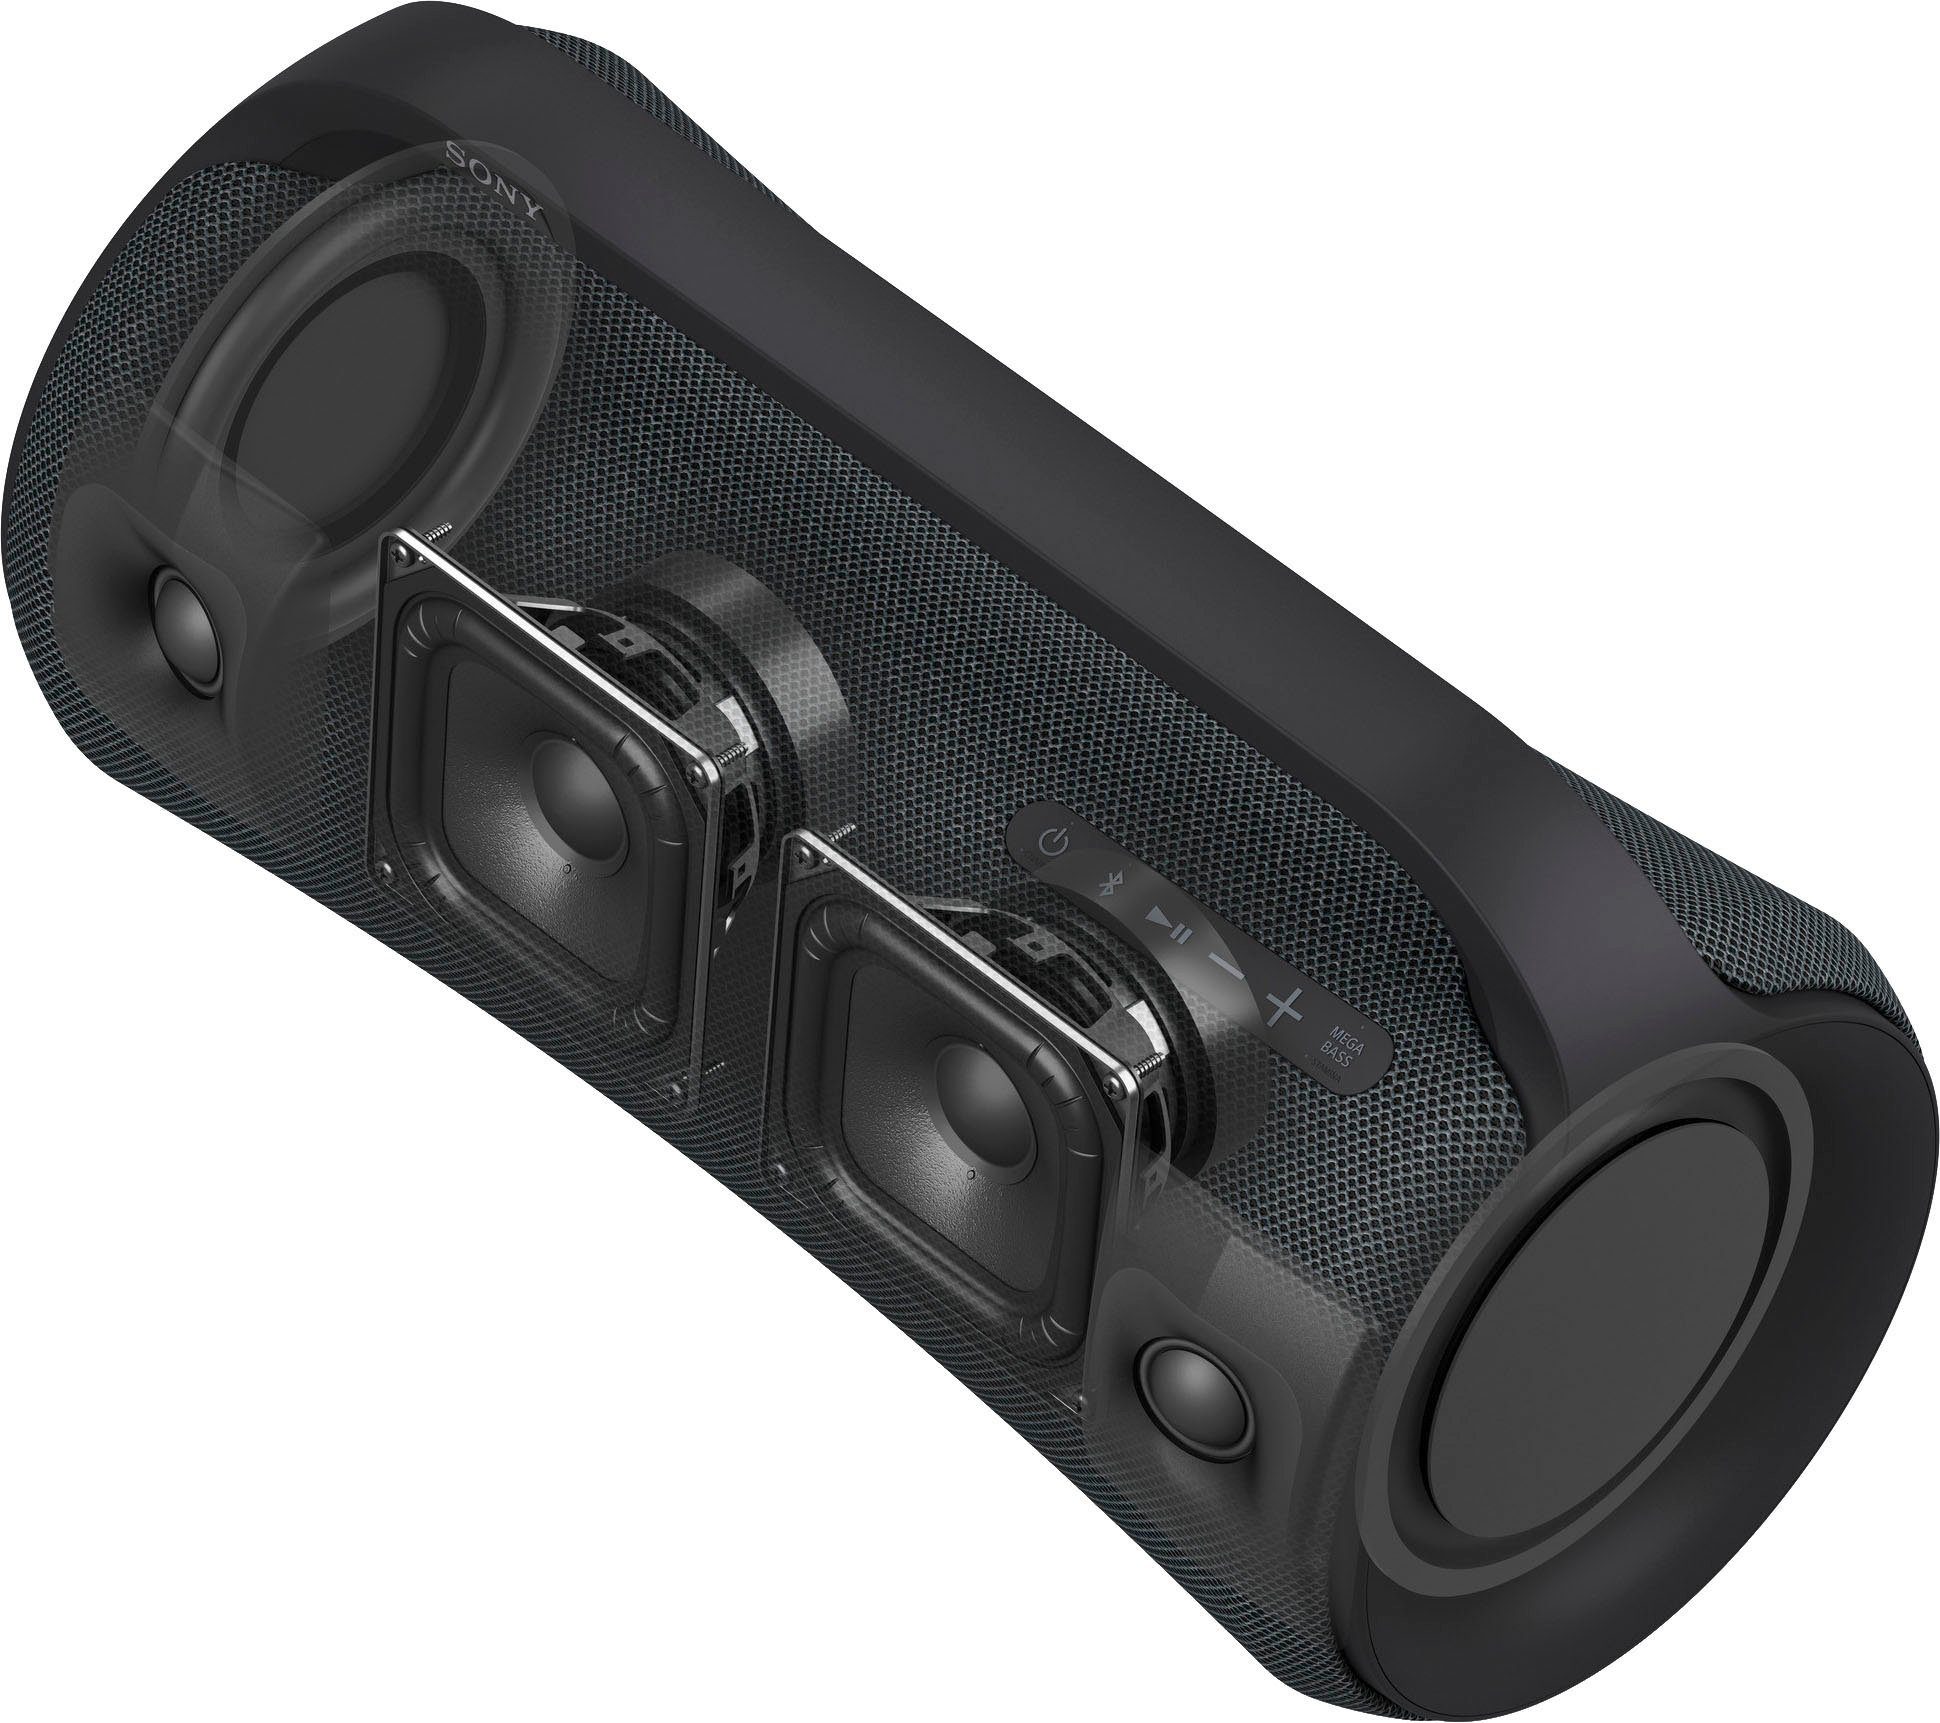 Sony Bluetooth, Bluetooth-Lautsprecher (A2DP Bluetooth) SRS-XG500